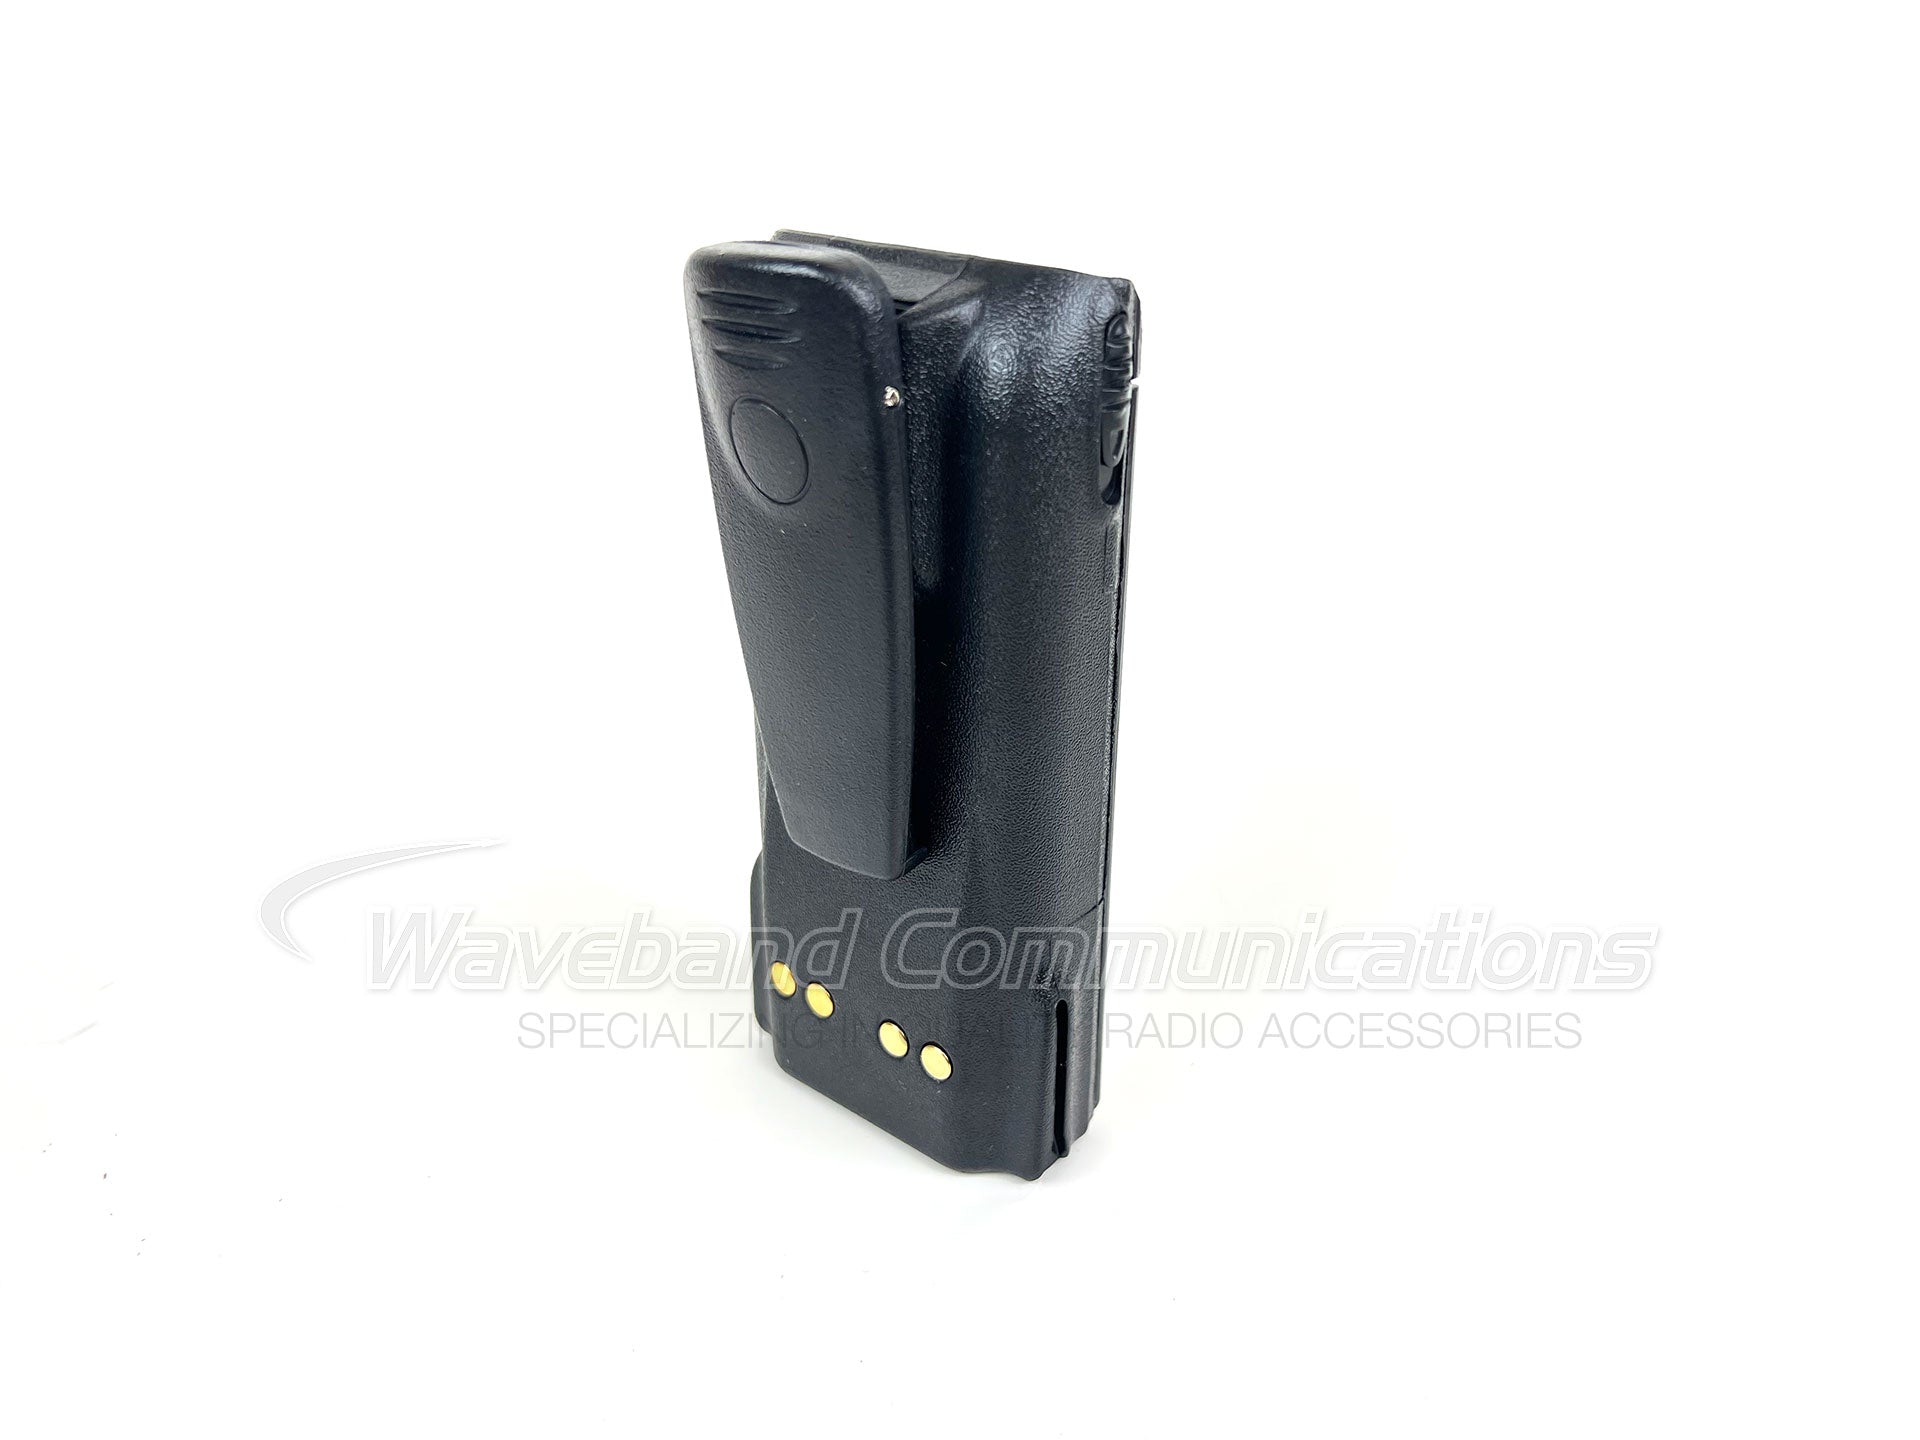 NTN9858C Motorola Astro Radio Battery para usar con Motorola XTS 1500 Portable